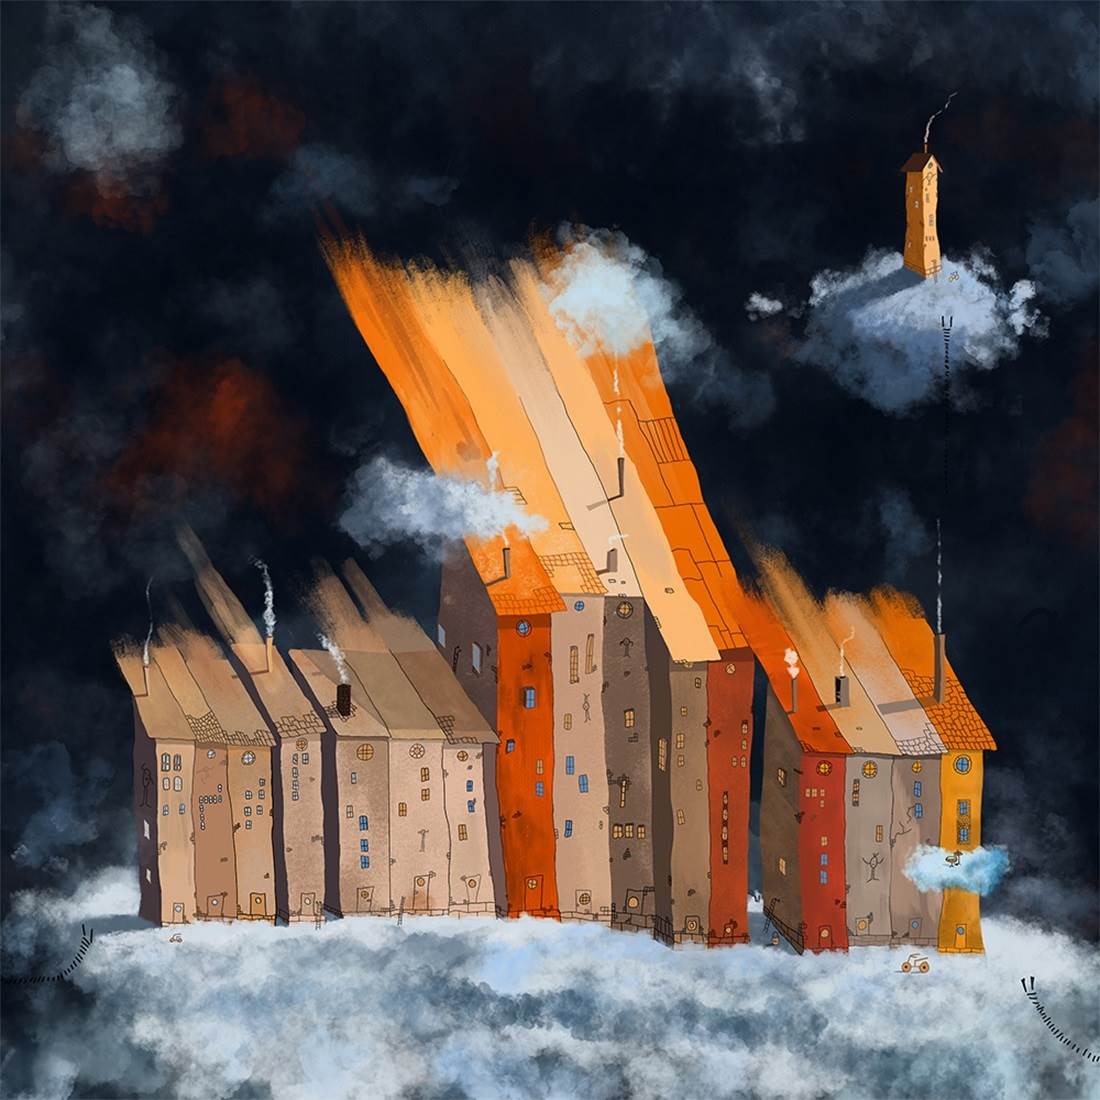 Cloud storage in village Gumboda, original Paisaje Digital Dibujo e Ilustración de Per Nylén